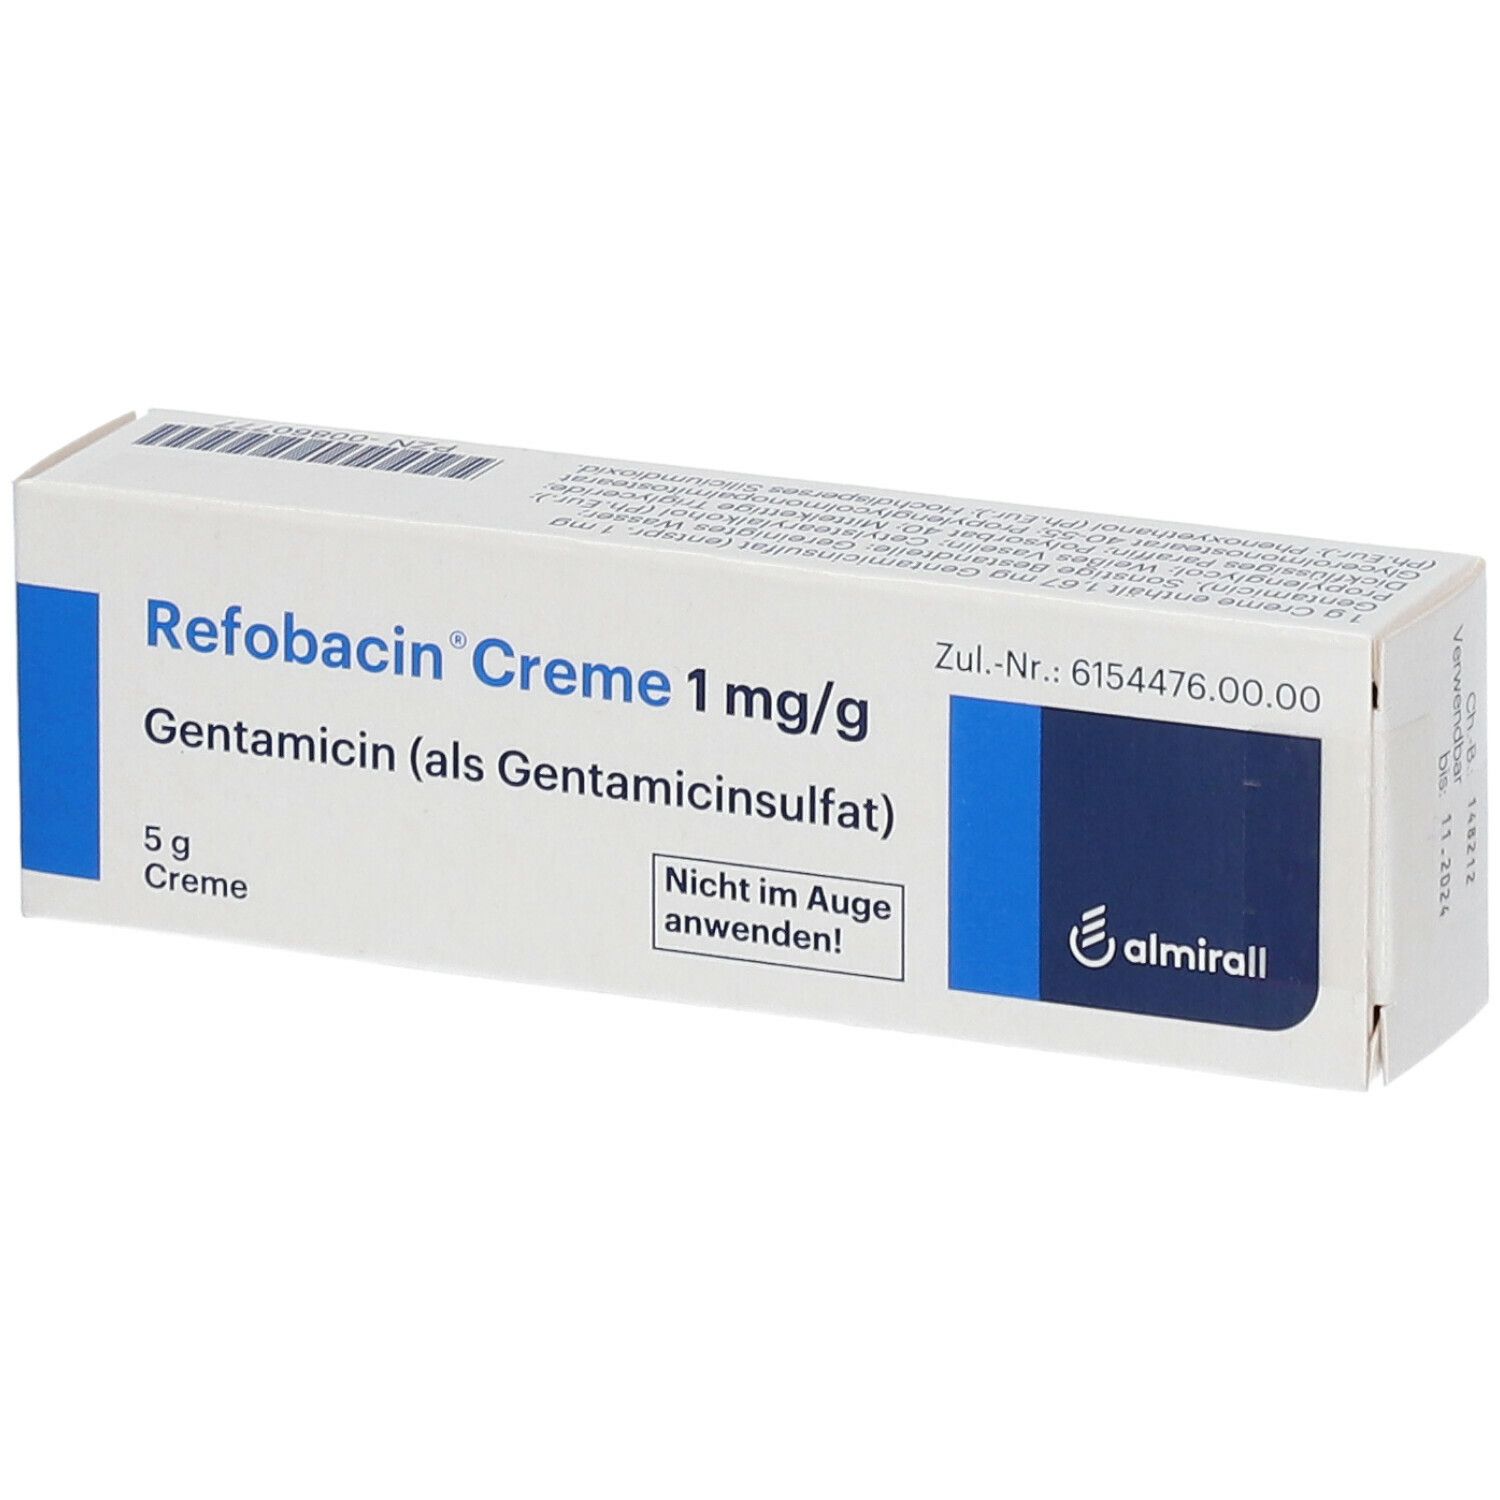 Refobacin® Creme 1 mg/g